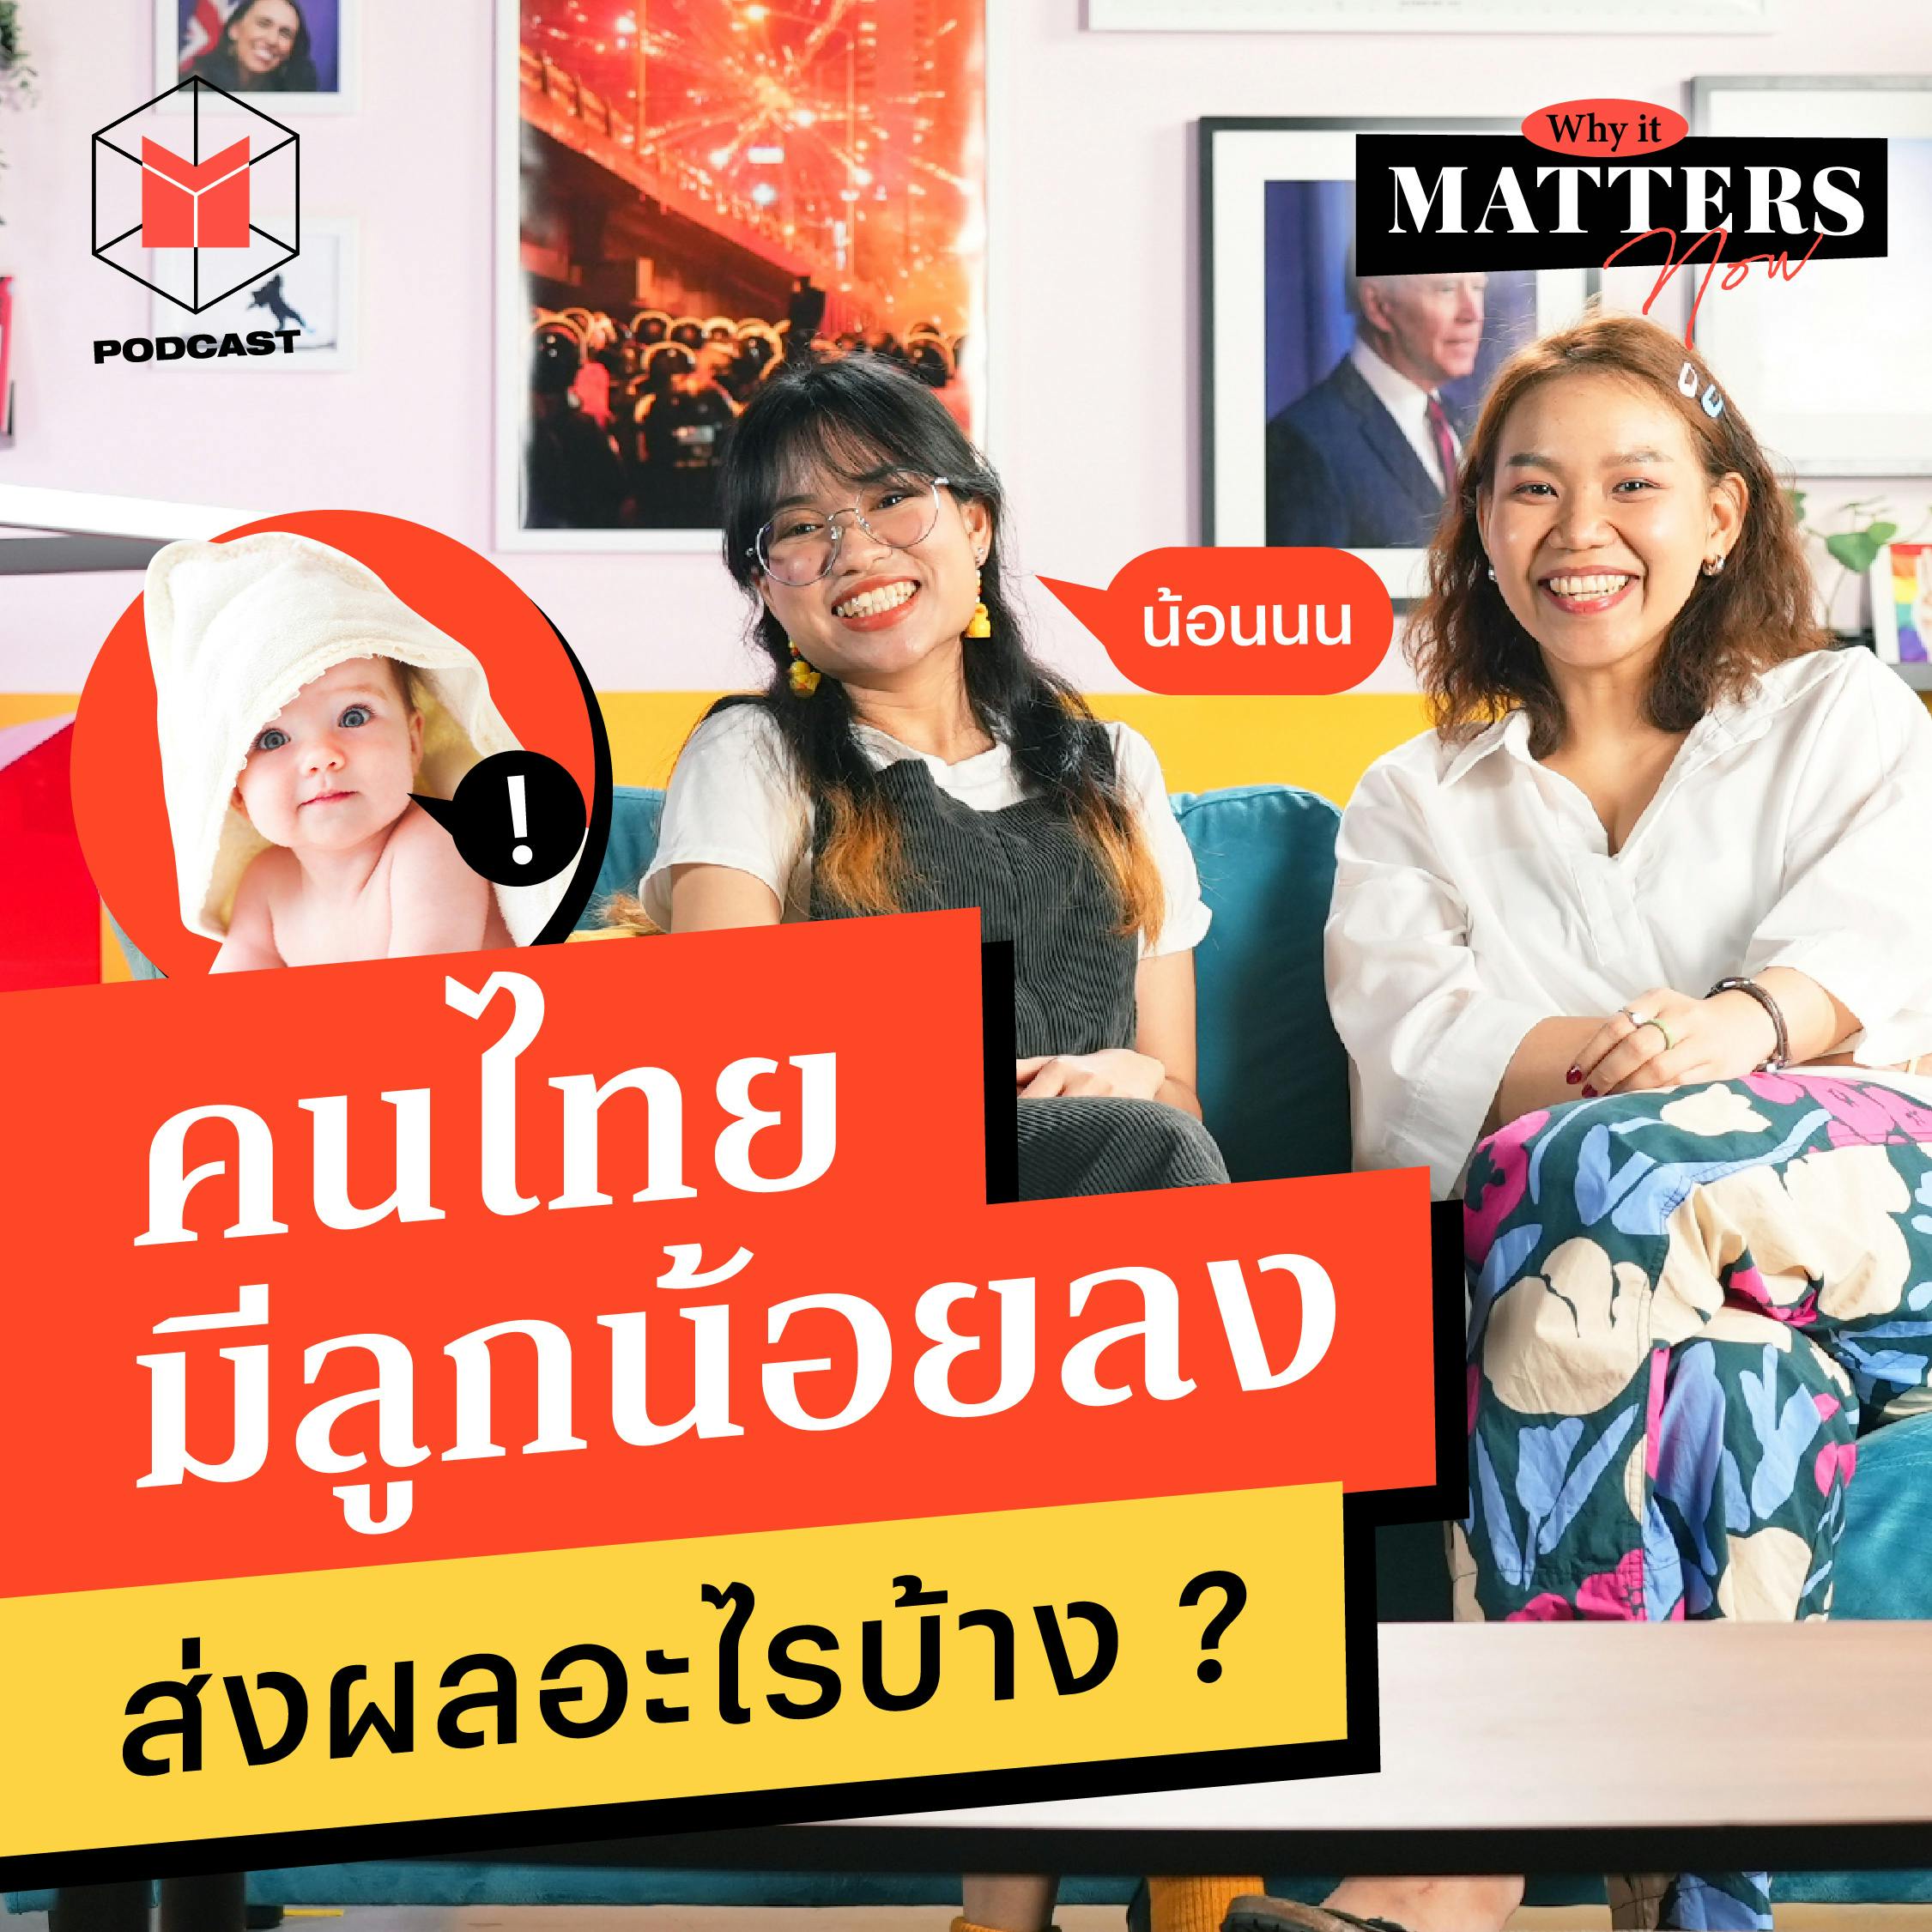 คนไทยมีลูกน้อยลง ส่งผลอะไรต่อสังคมบ้าง? | WIMN43